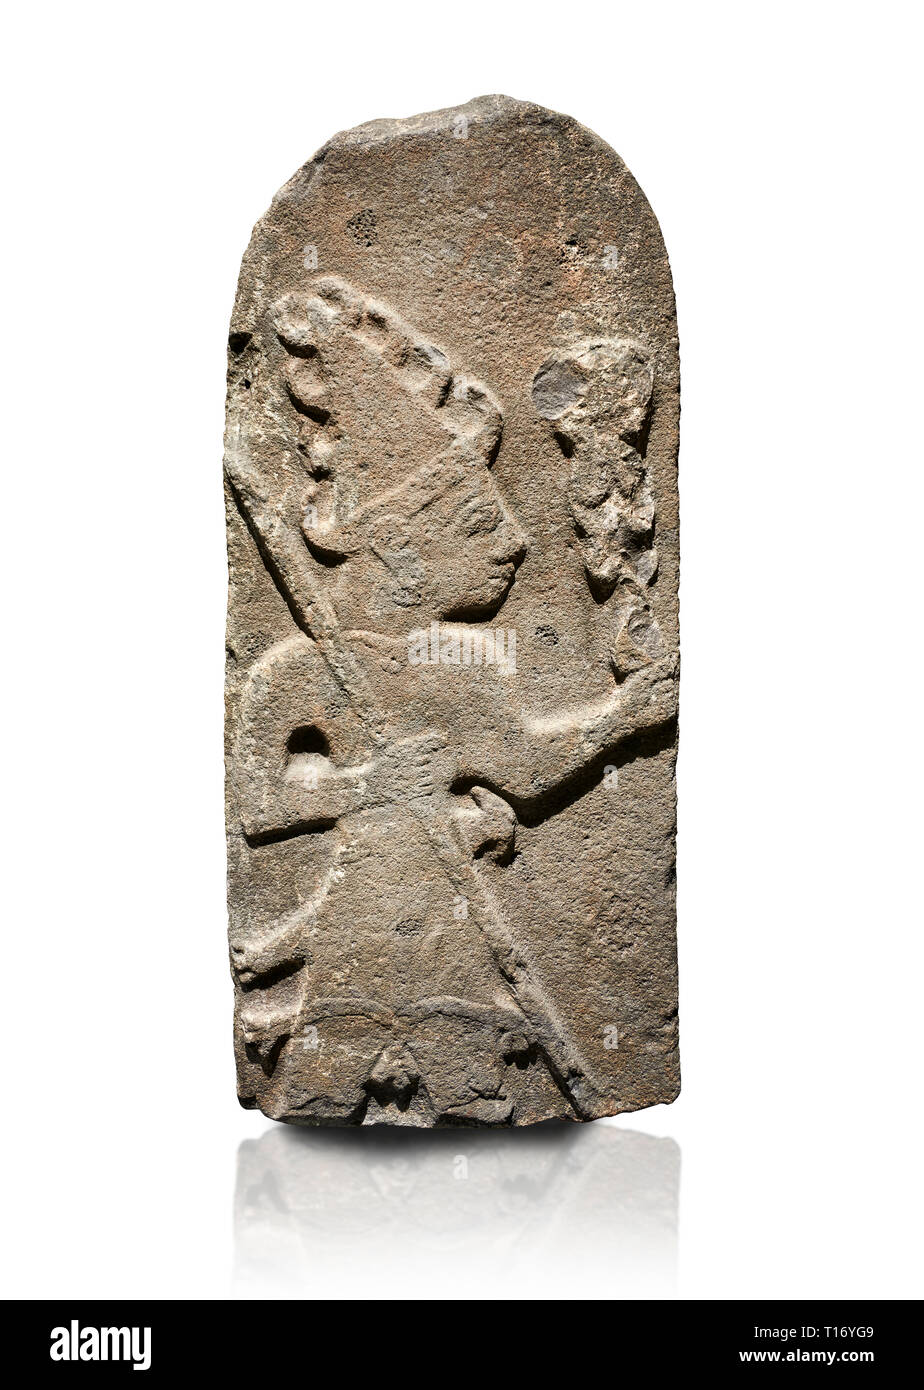 Hittita Rilievo monumentale scultura ofa Dio probabilmente azienda aste parafulmine. Fine periodo Hittita - 900-700 A.C. Adana il Museo di Archeologia, Turchia. Di nuovo Foto Stock